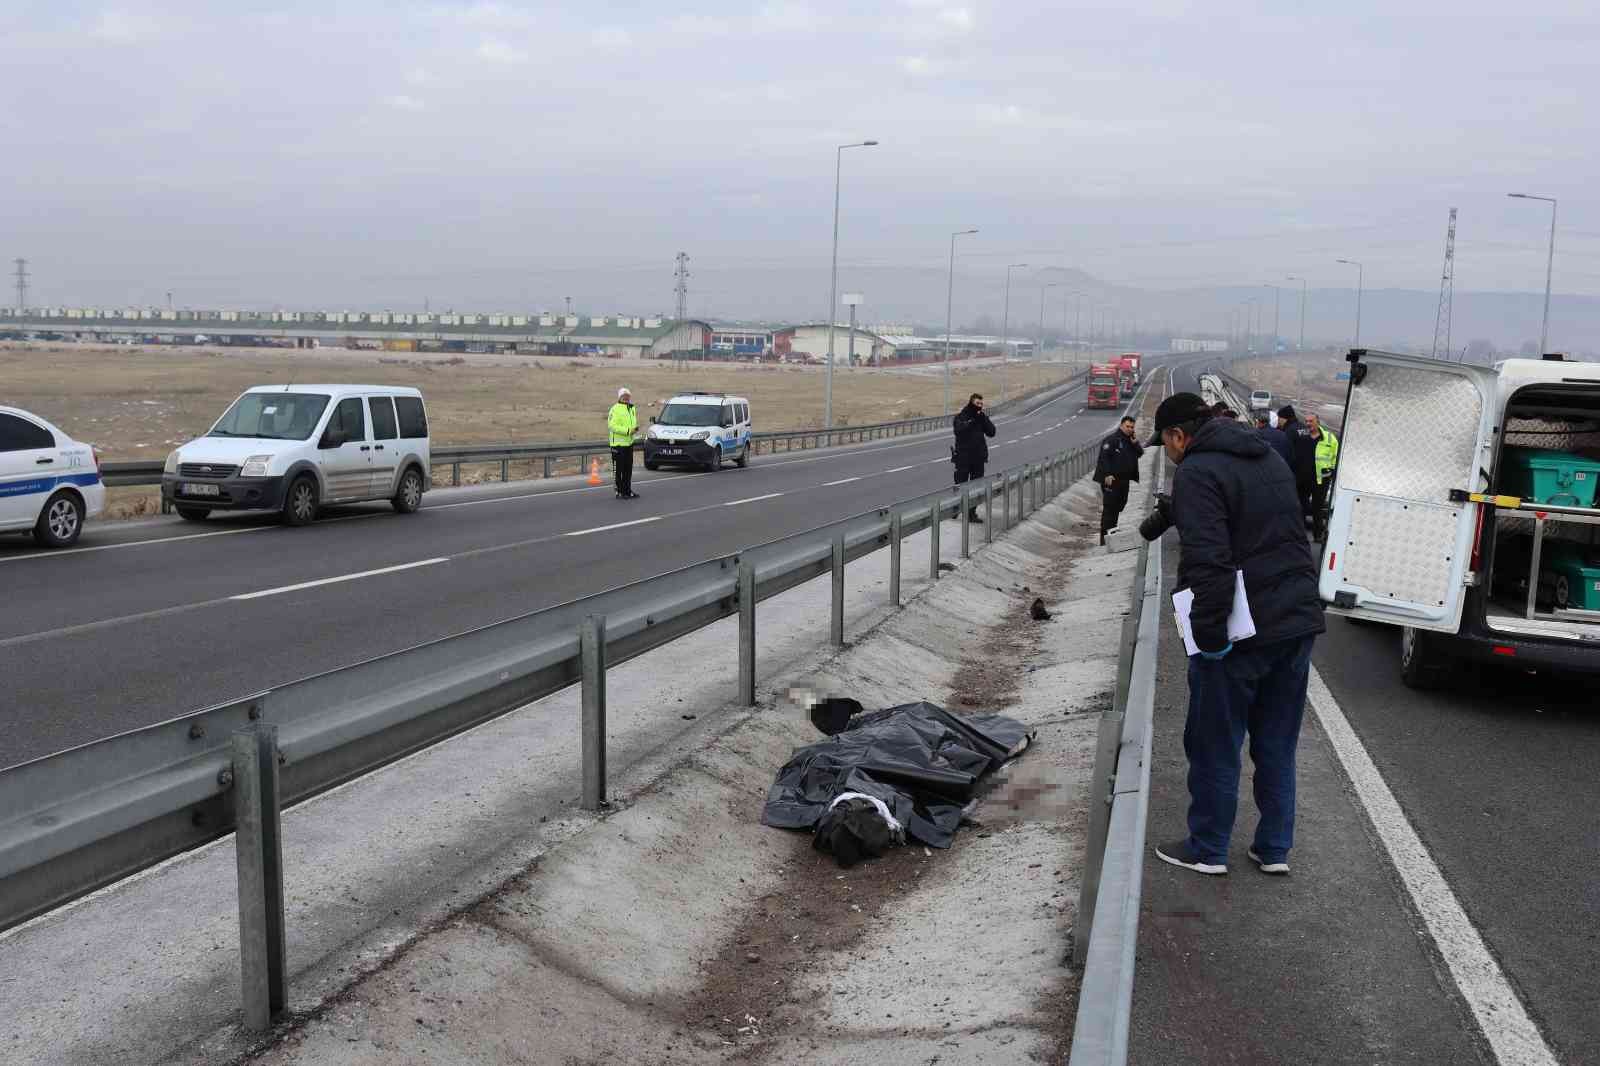 Kayseri’de üst üste feci kaza:1 ölü, 1 ağır yaralı #kayseri